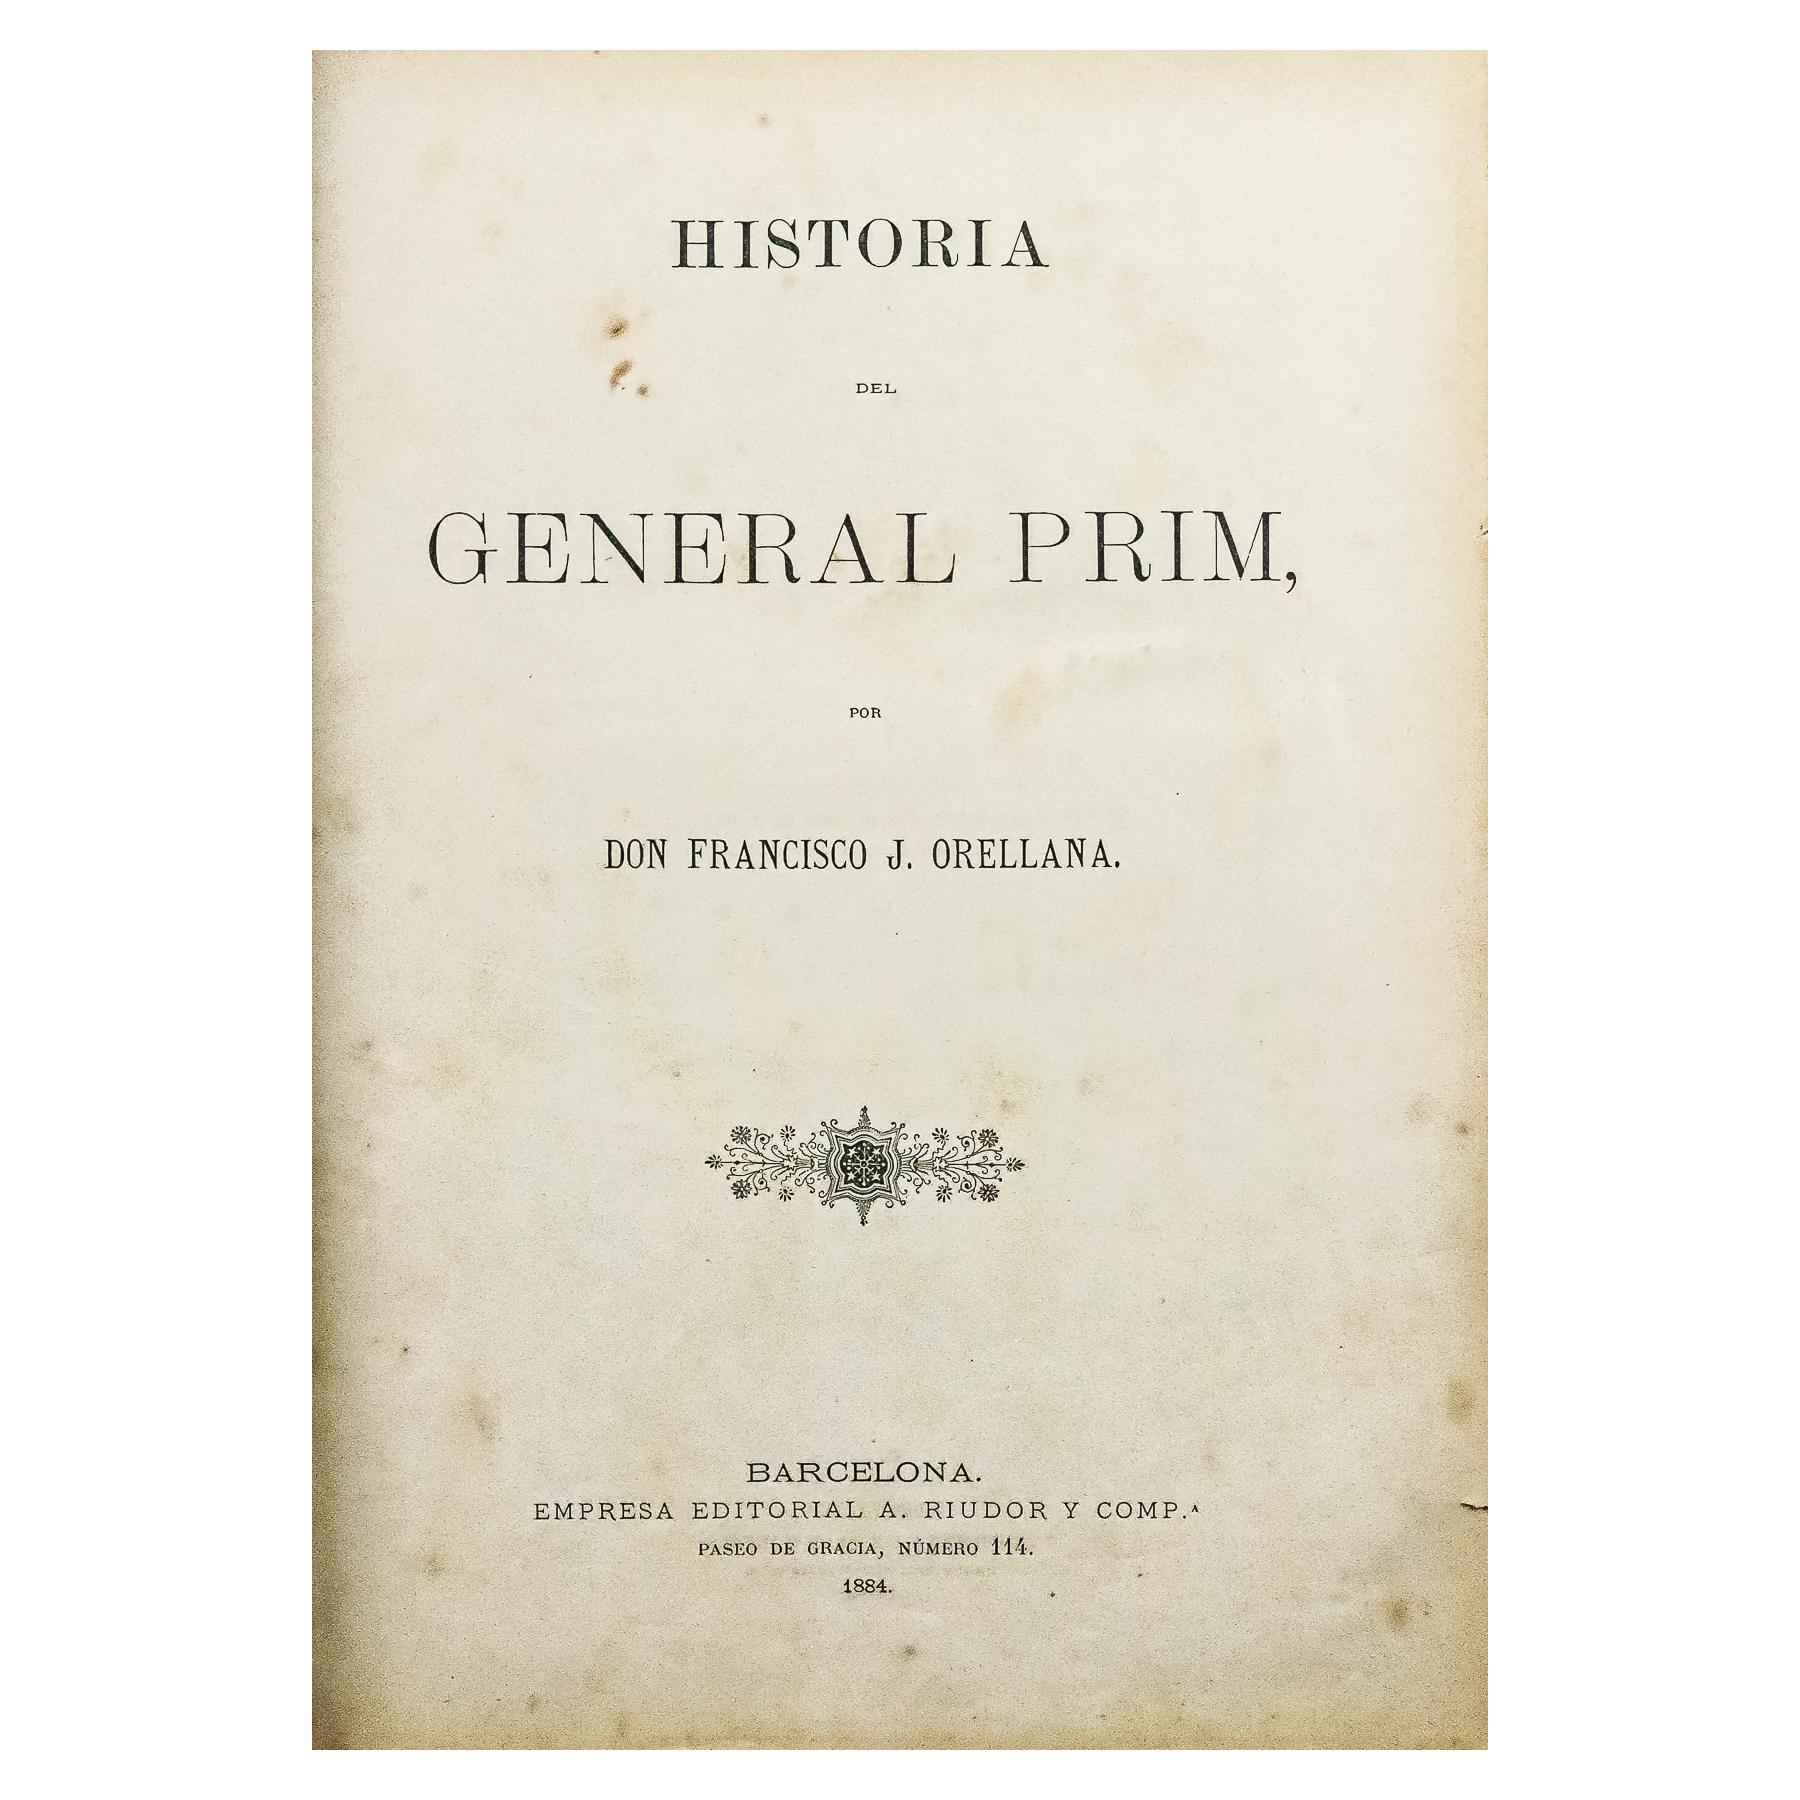 "HISTORIA DEL GENERAL PRIM" TOMO I, CON LITOGRAFIA ENMARCADA